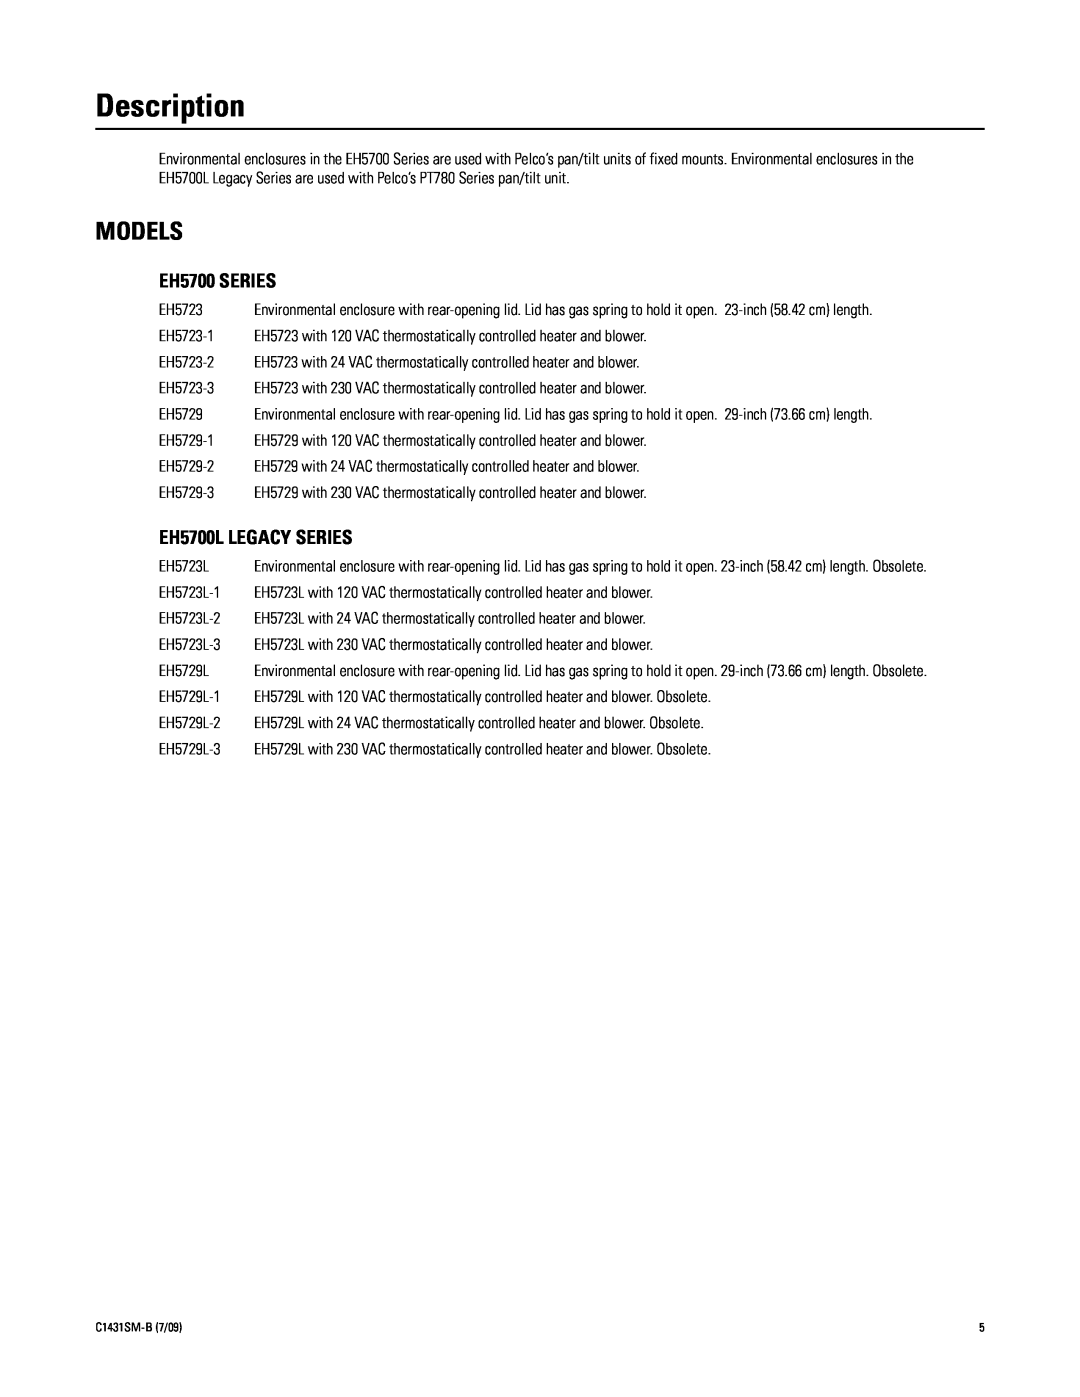 Pelco X1431SM-B (7/09) manual Description, Models, EH5700 SERIES, EH5700L LEGACY SERIES 